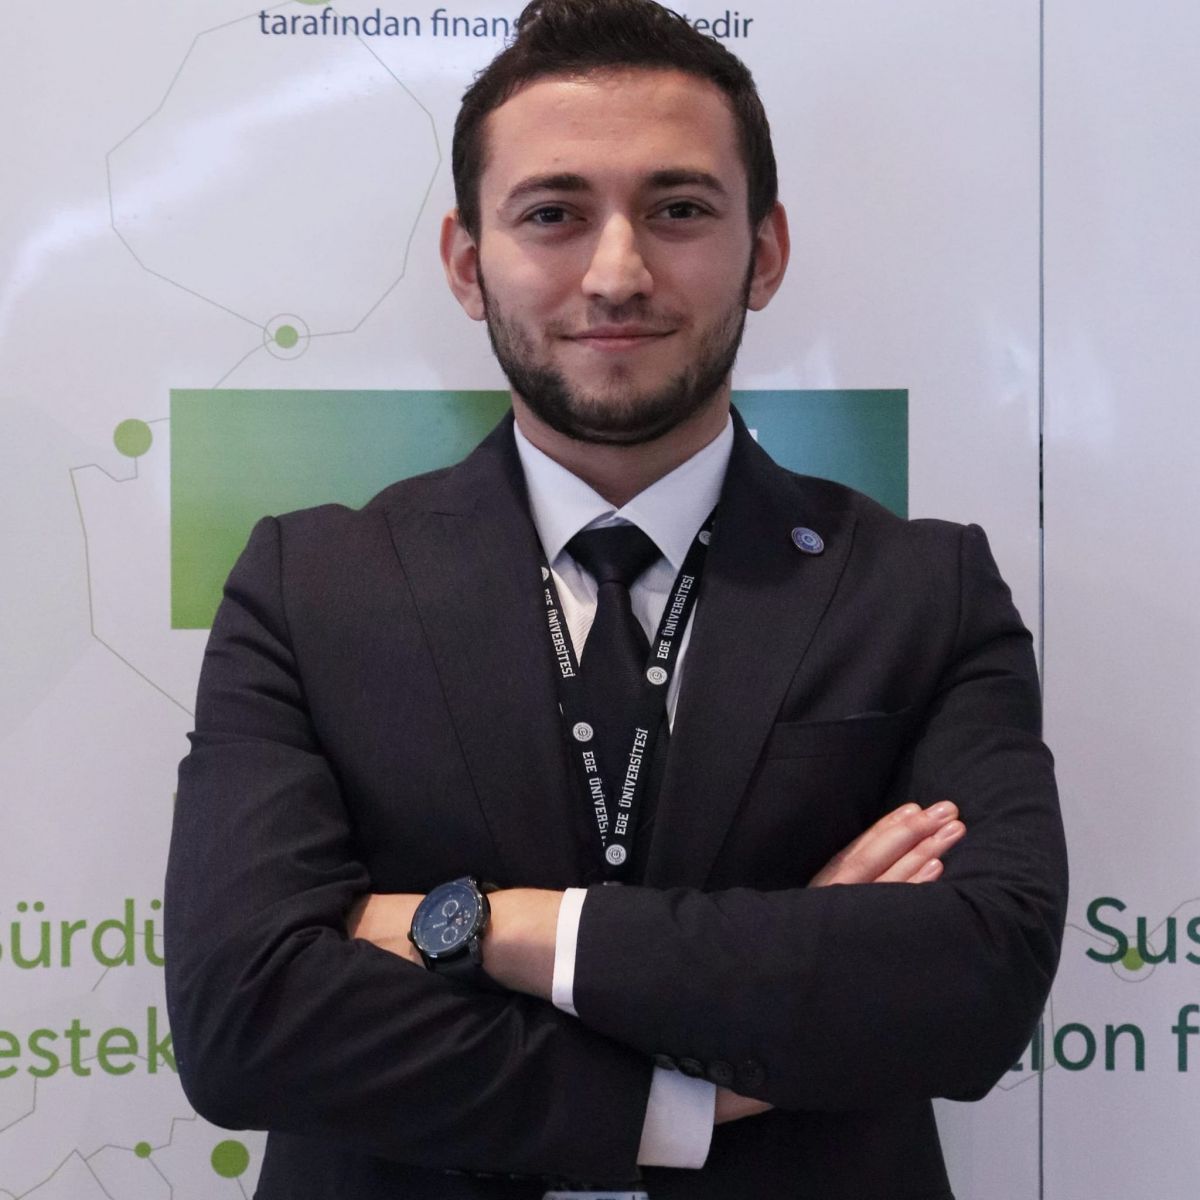 Mustafa Turker